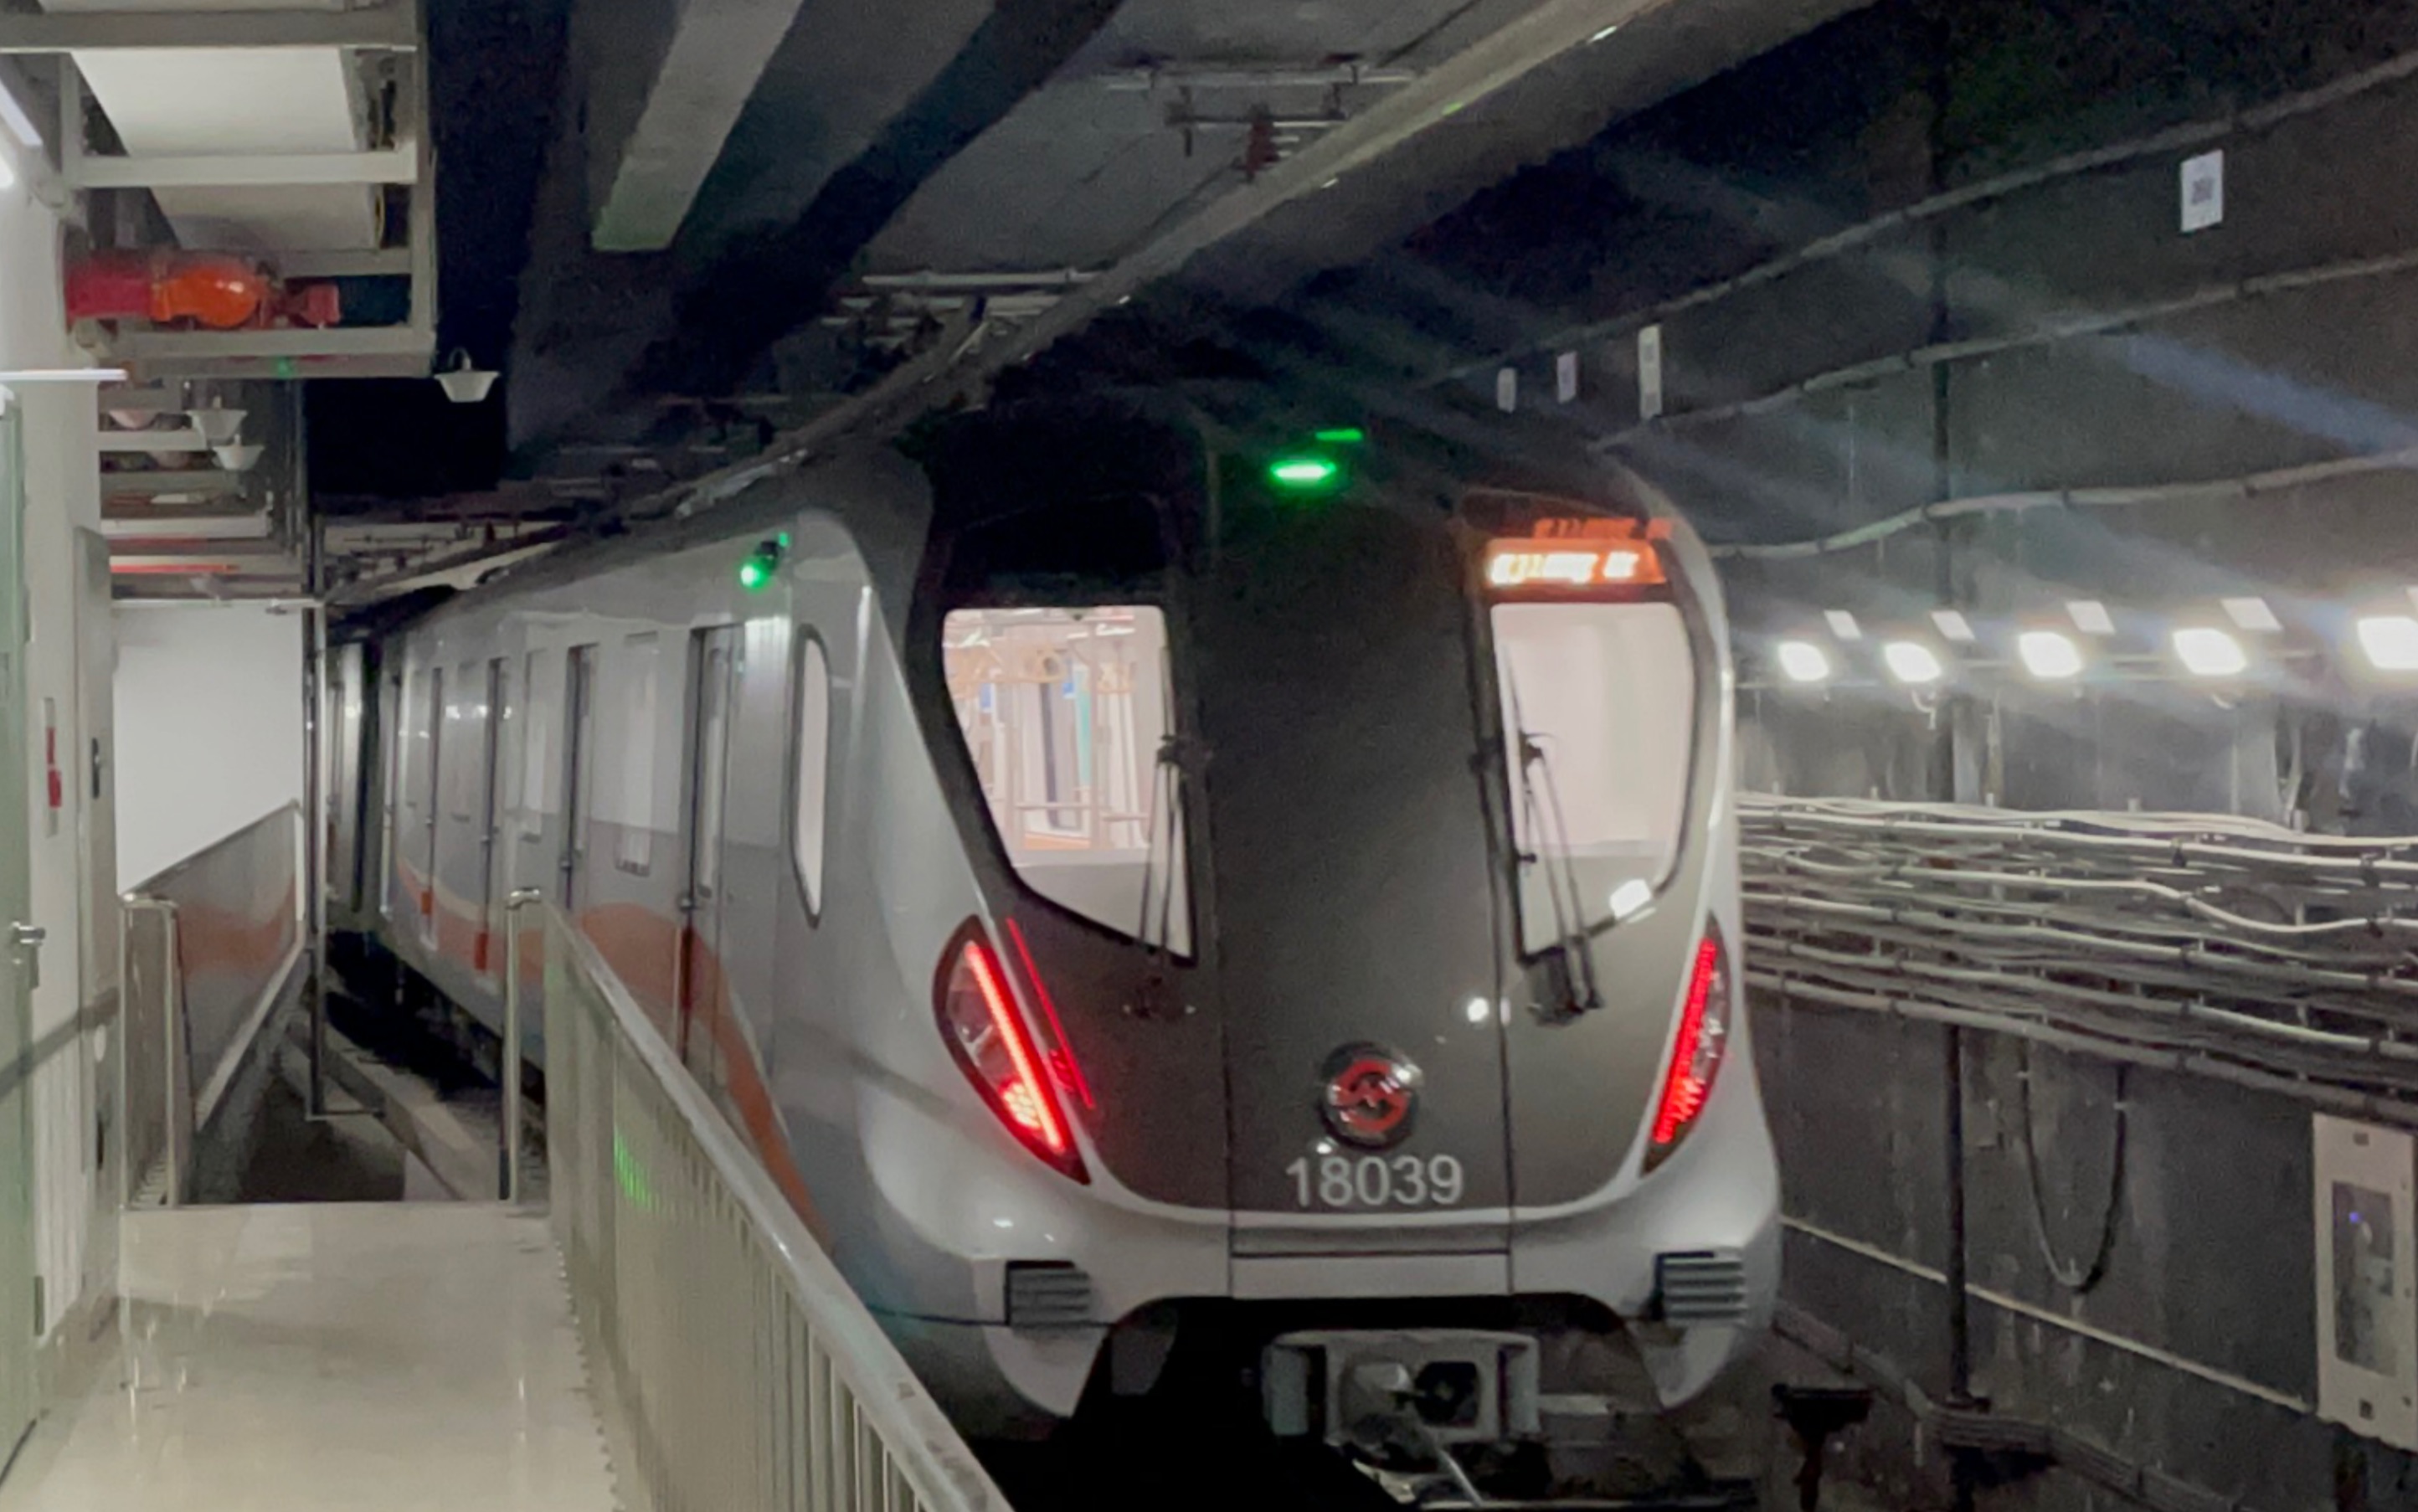 上海地铁18号线新车图片